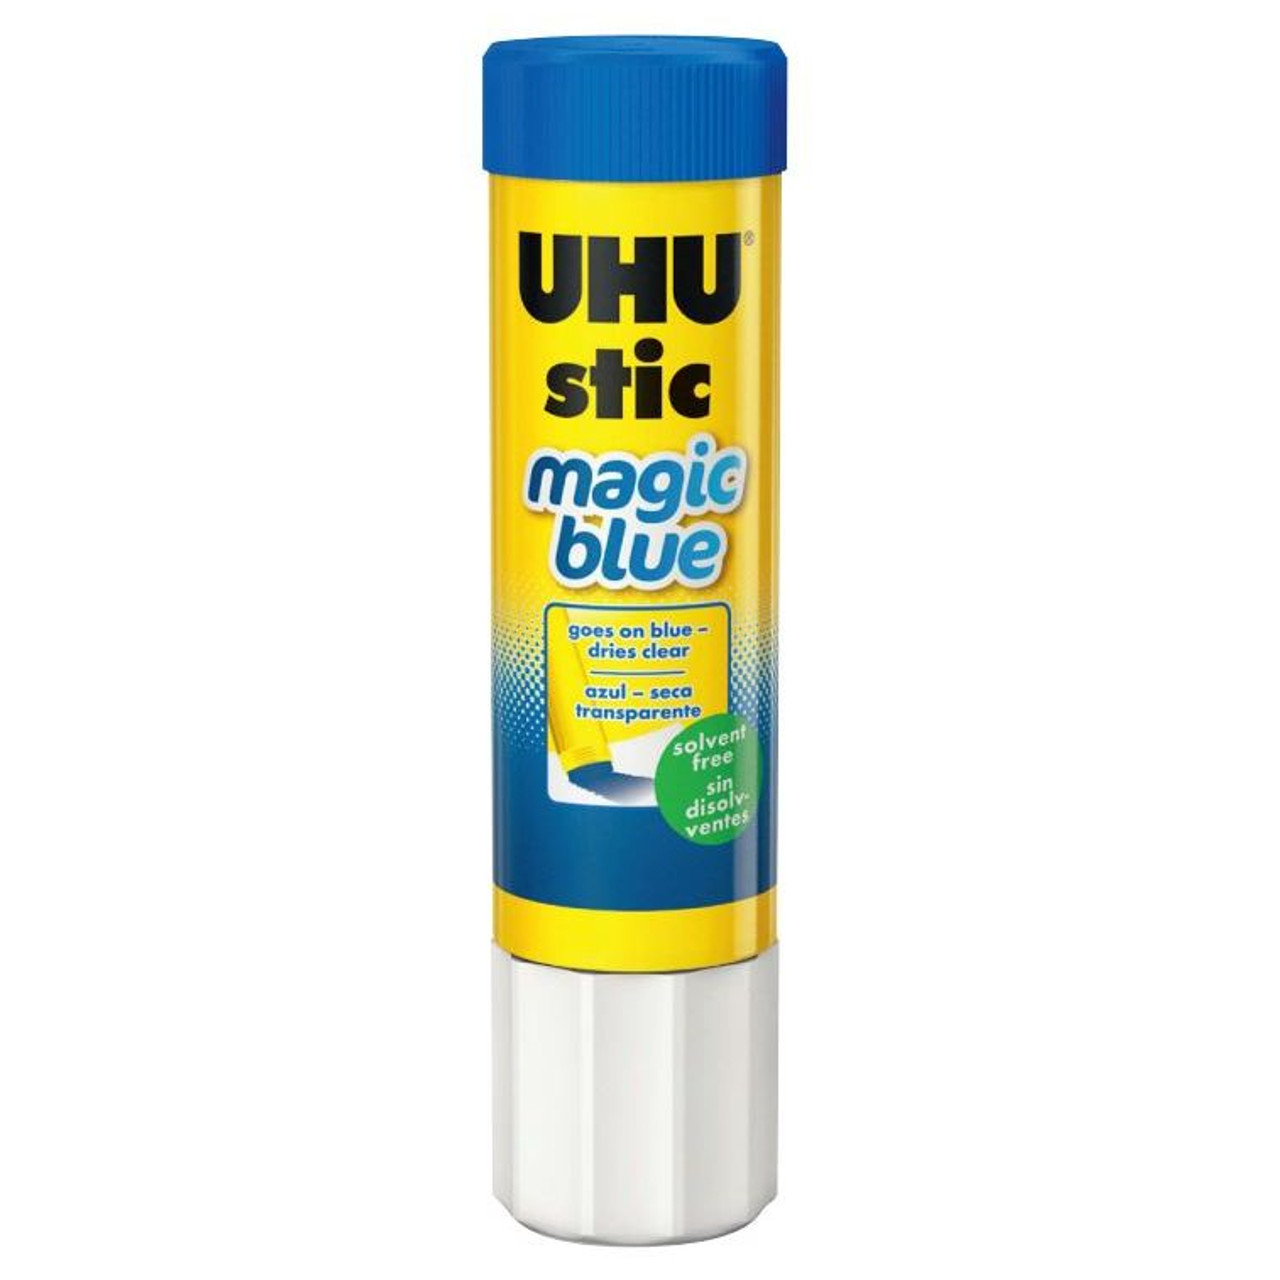 UHU Glue Stick Magic Blue